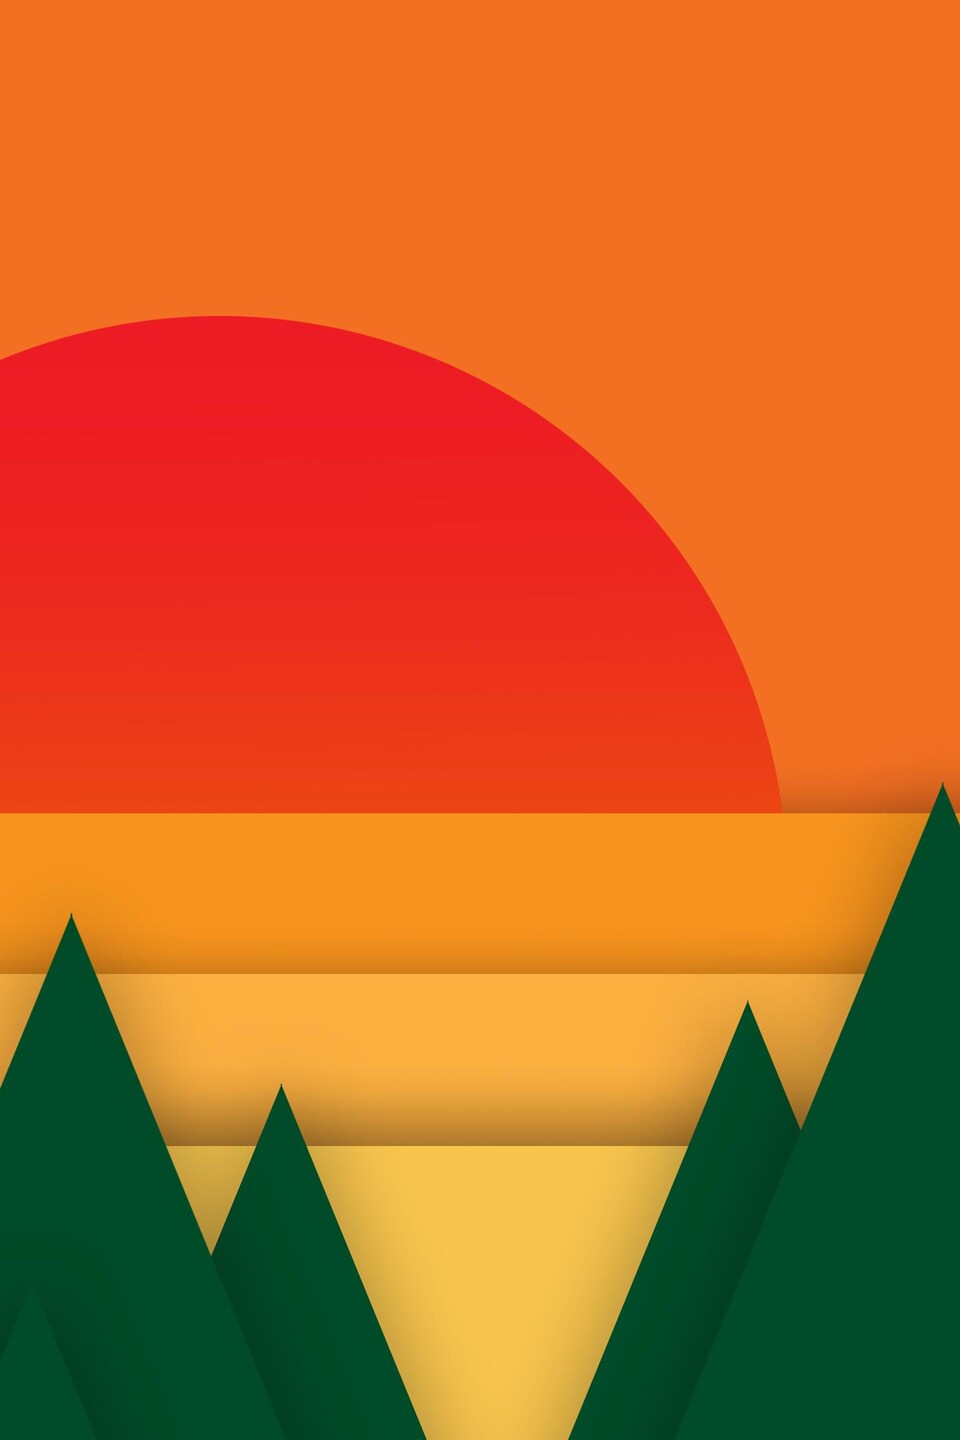 Illustration thème du dossier, montrant un paysage de couleur orange avec un soleil levant rouge et des sapins verts.